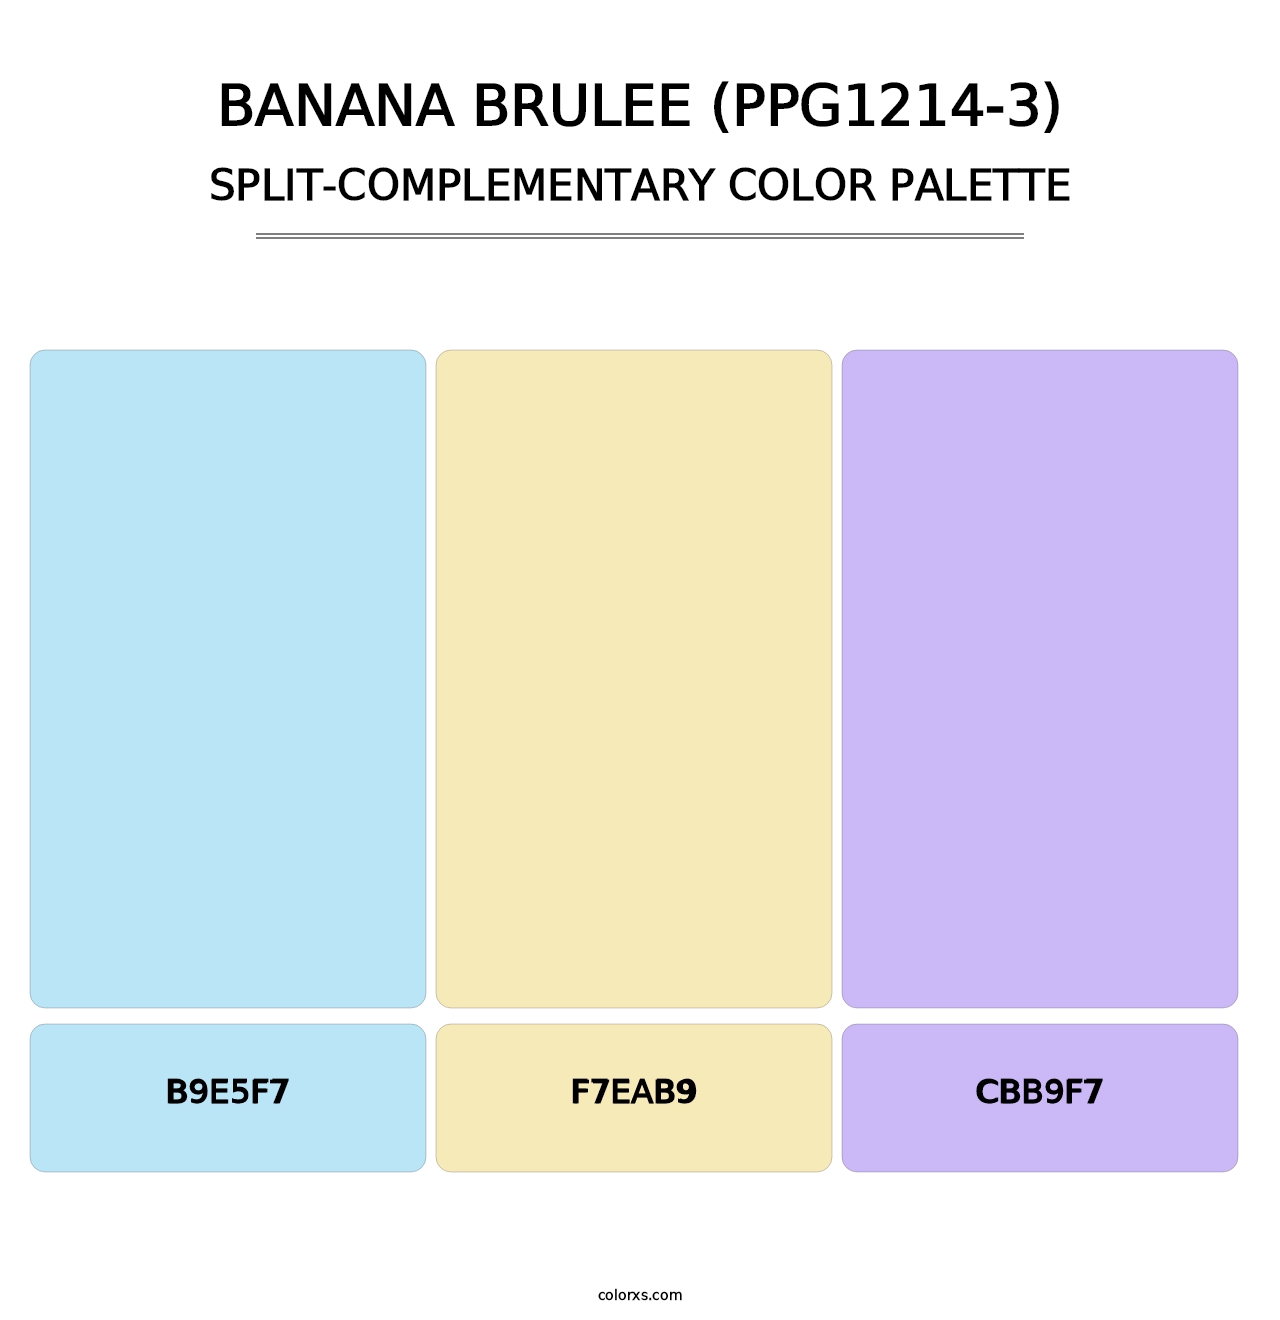 Banana Brulee (PPG1214-3) - Split-Complementary Color Palette